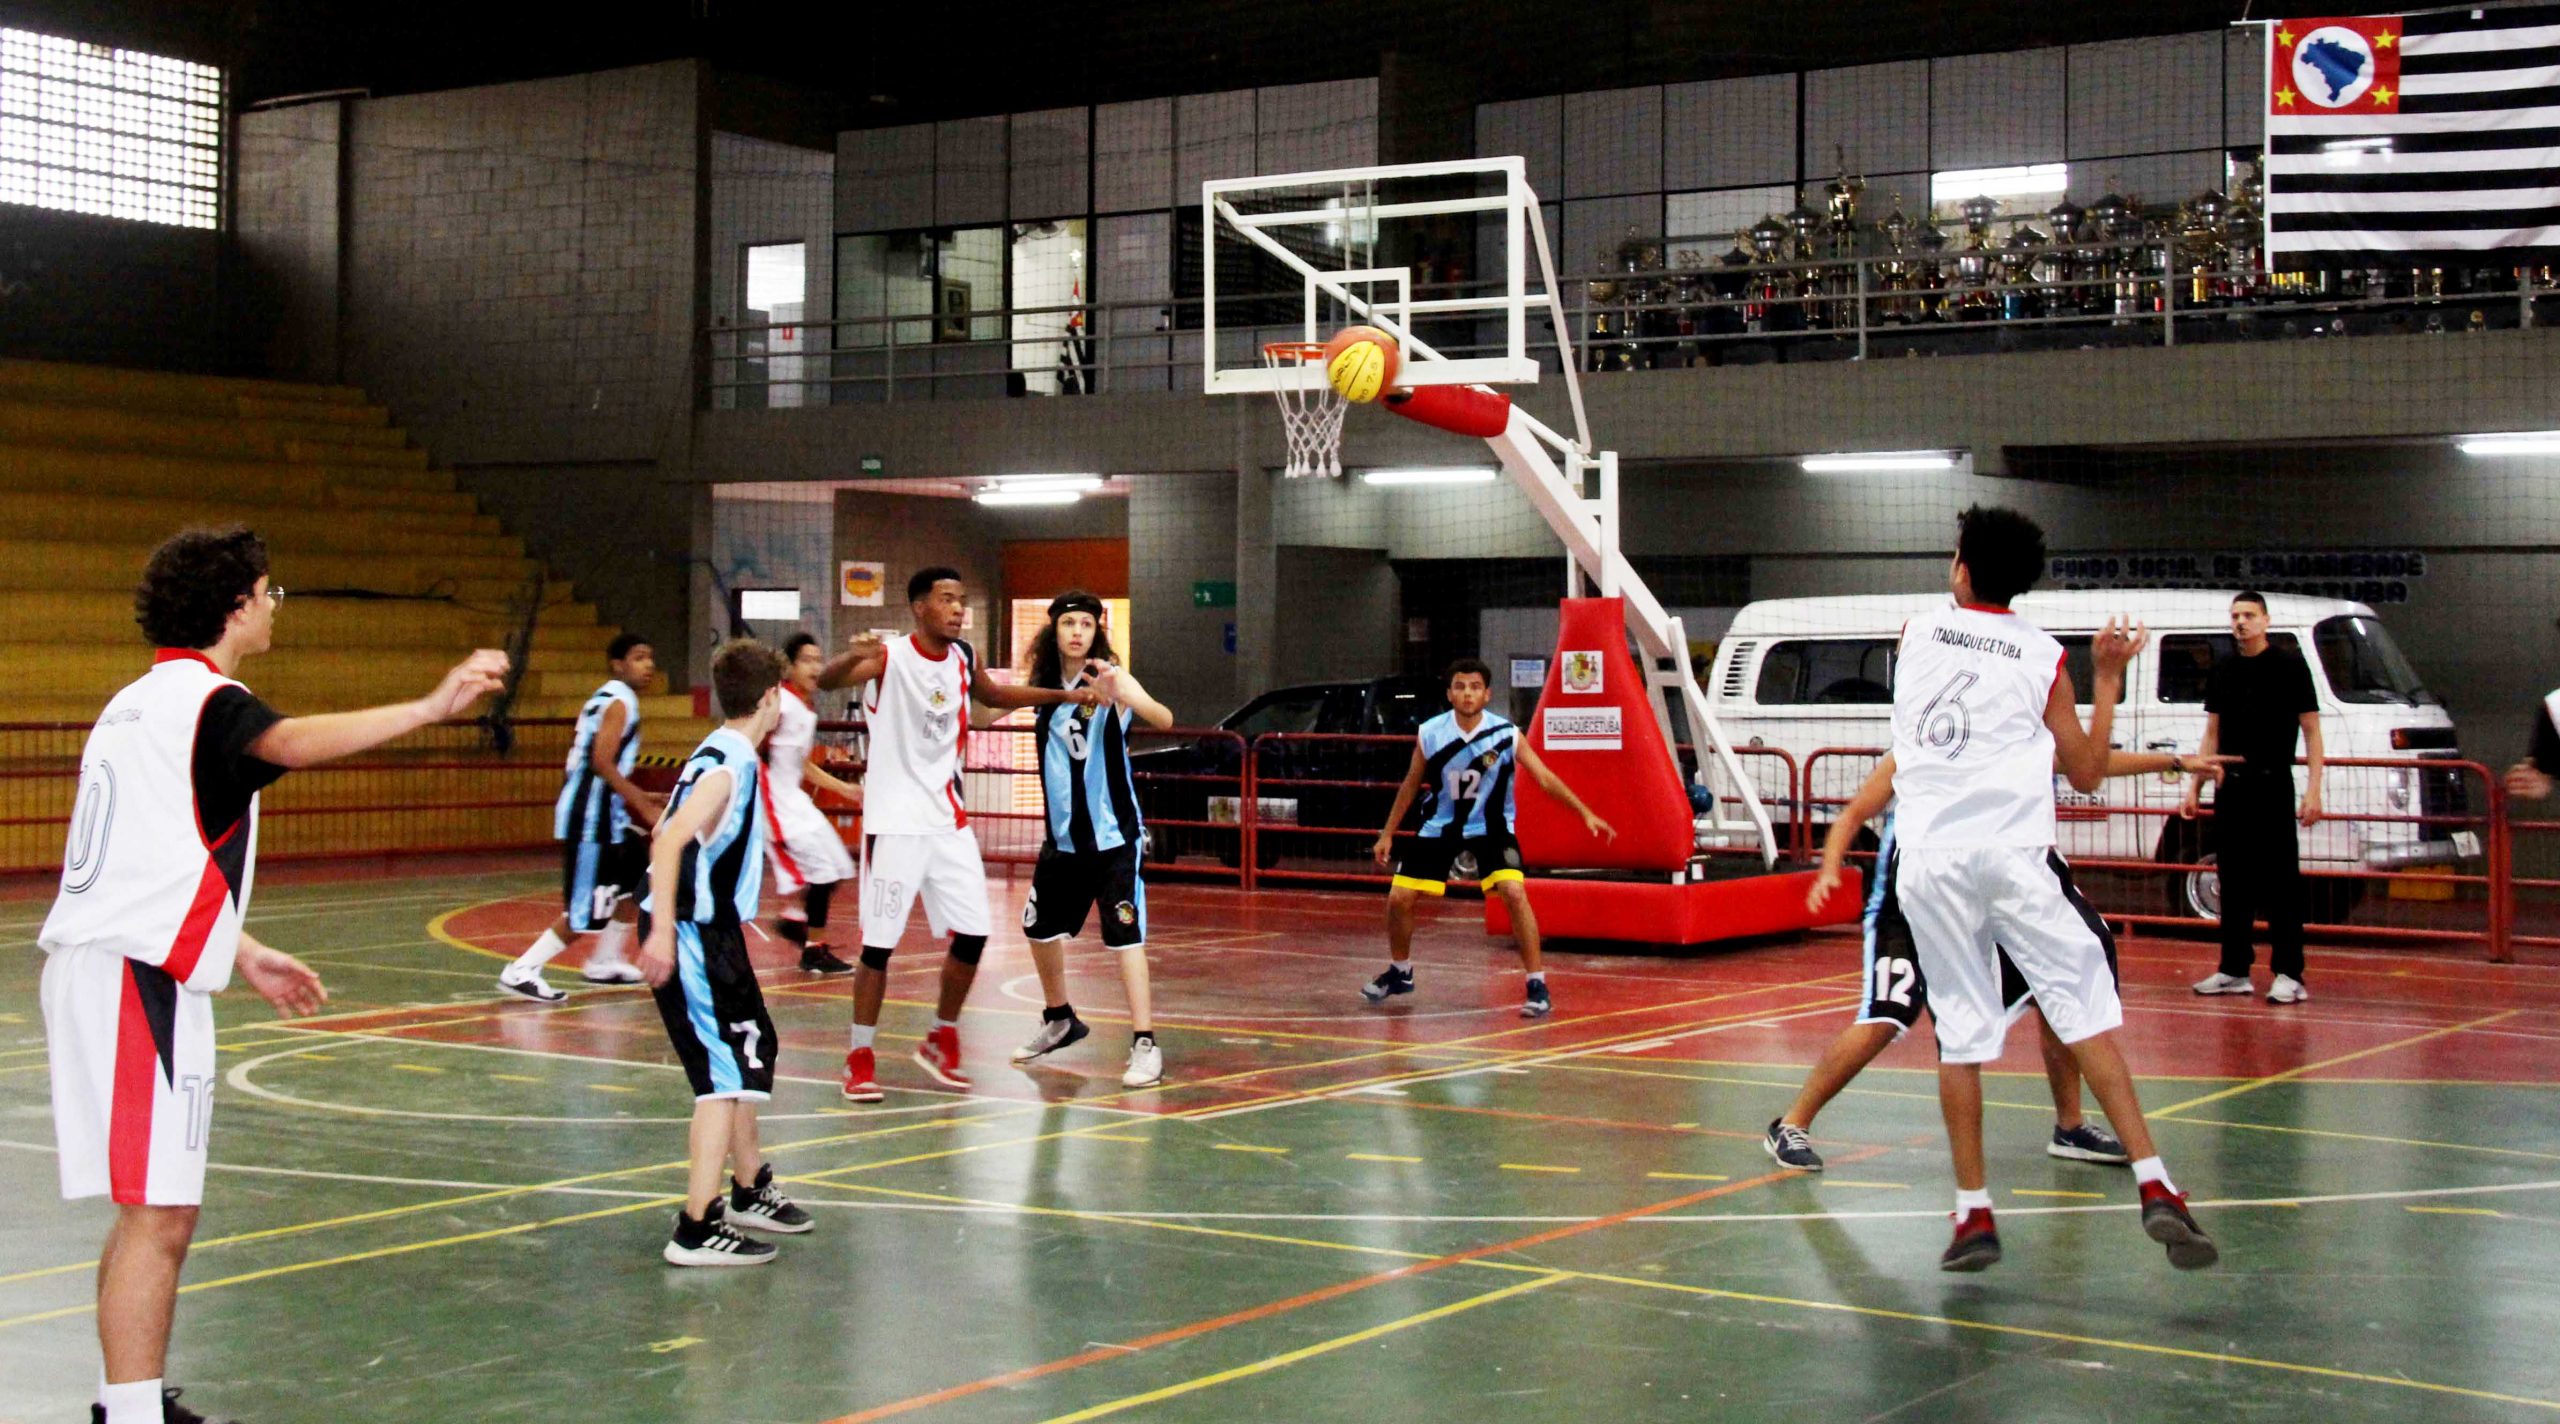 Prefeitura de São Paulo oferece aulas de basquete gratuitas para